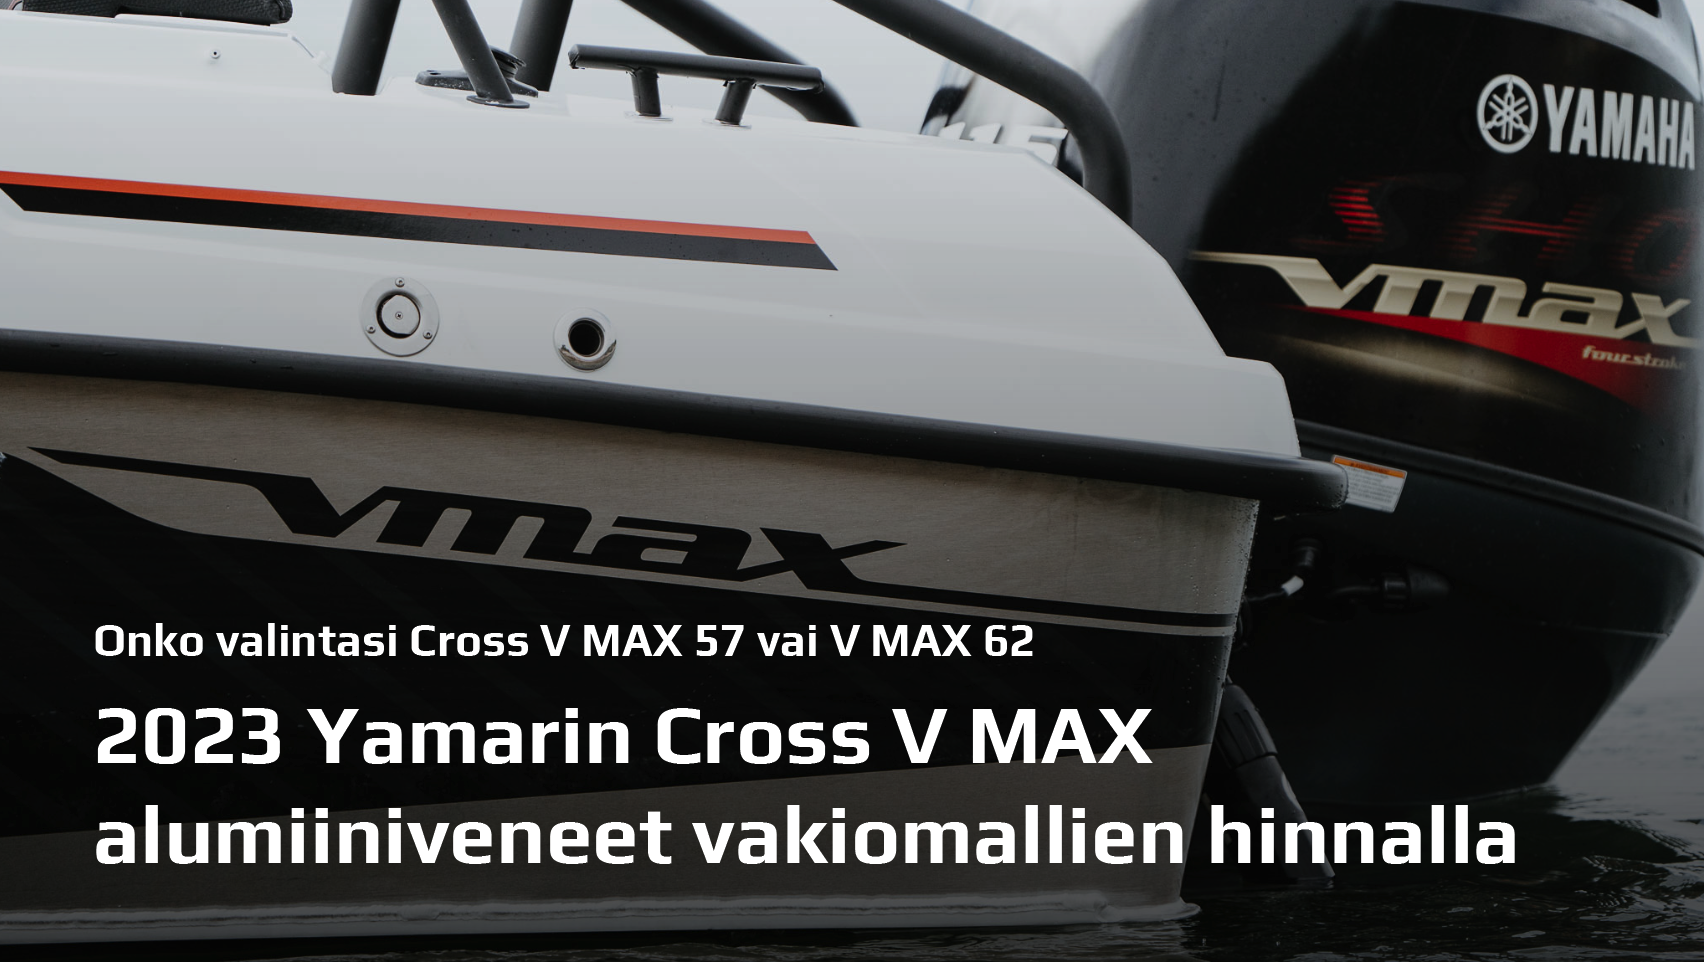 Valitse vuoden 2023 Yamarin Cross V MAX nyt vakiomallin hinnalla! Etusi jopa 1800€